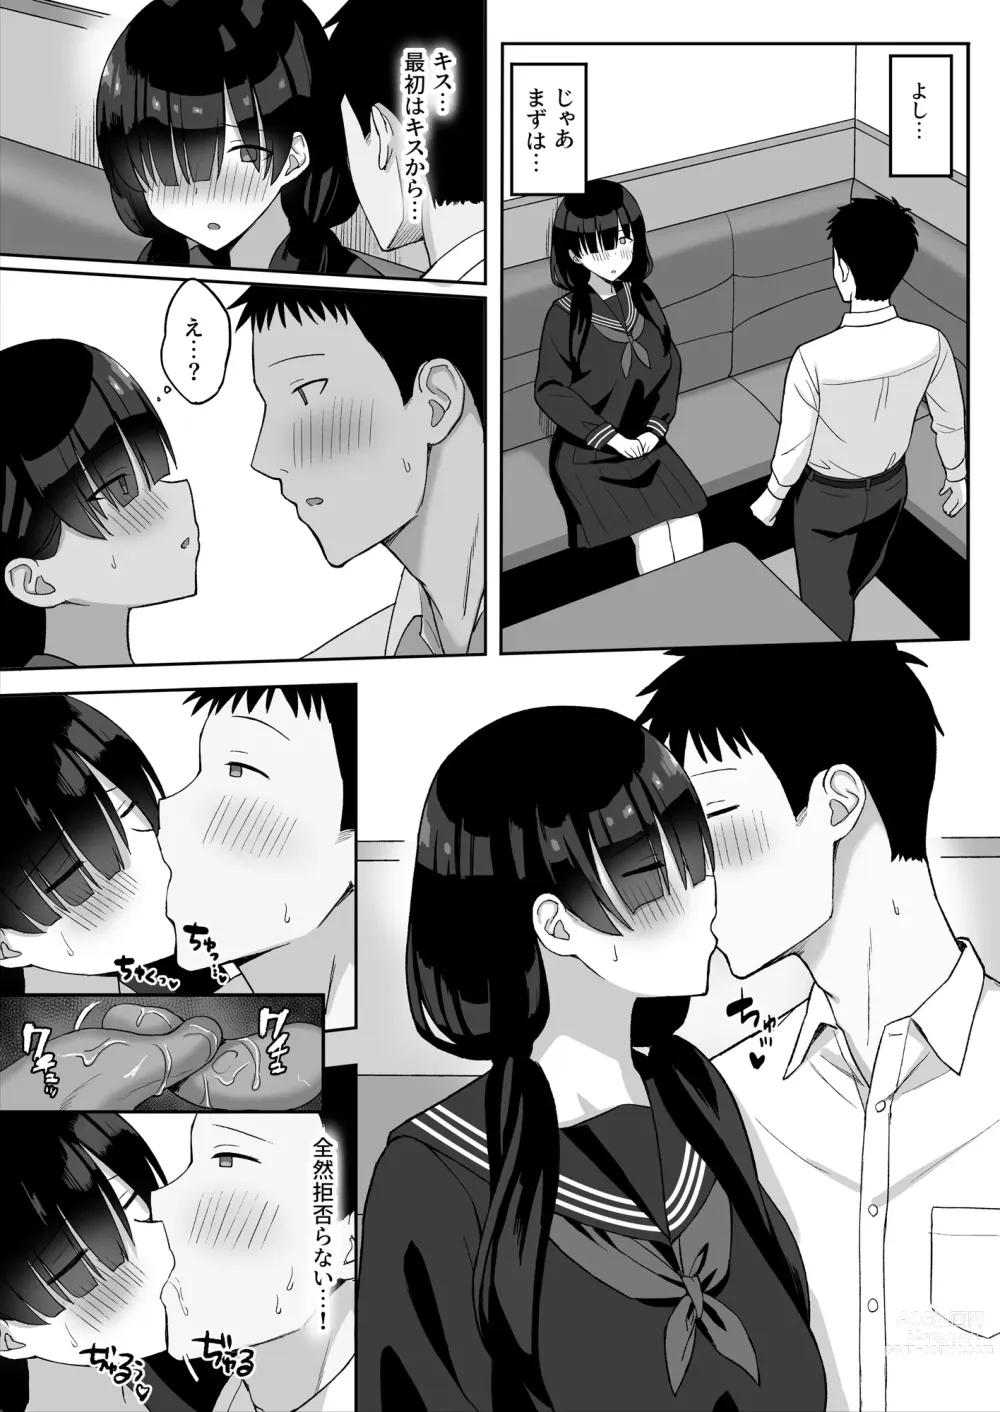 Page 13 of doujinshi 地味巨乳のストーカー女に告白されたのでヤりまくってみた話